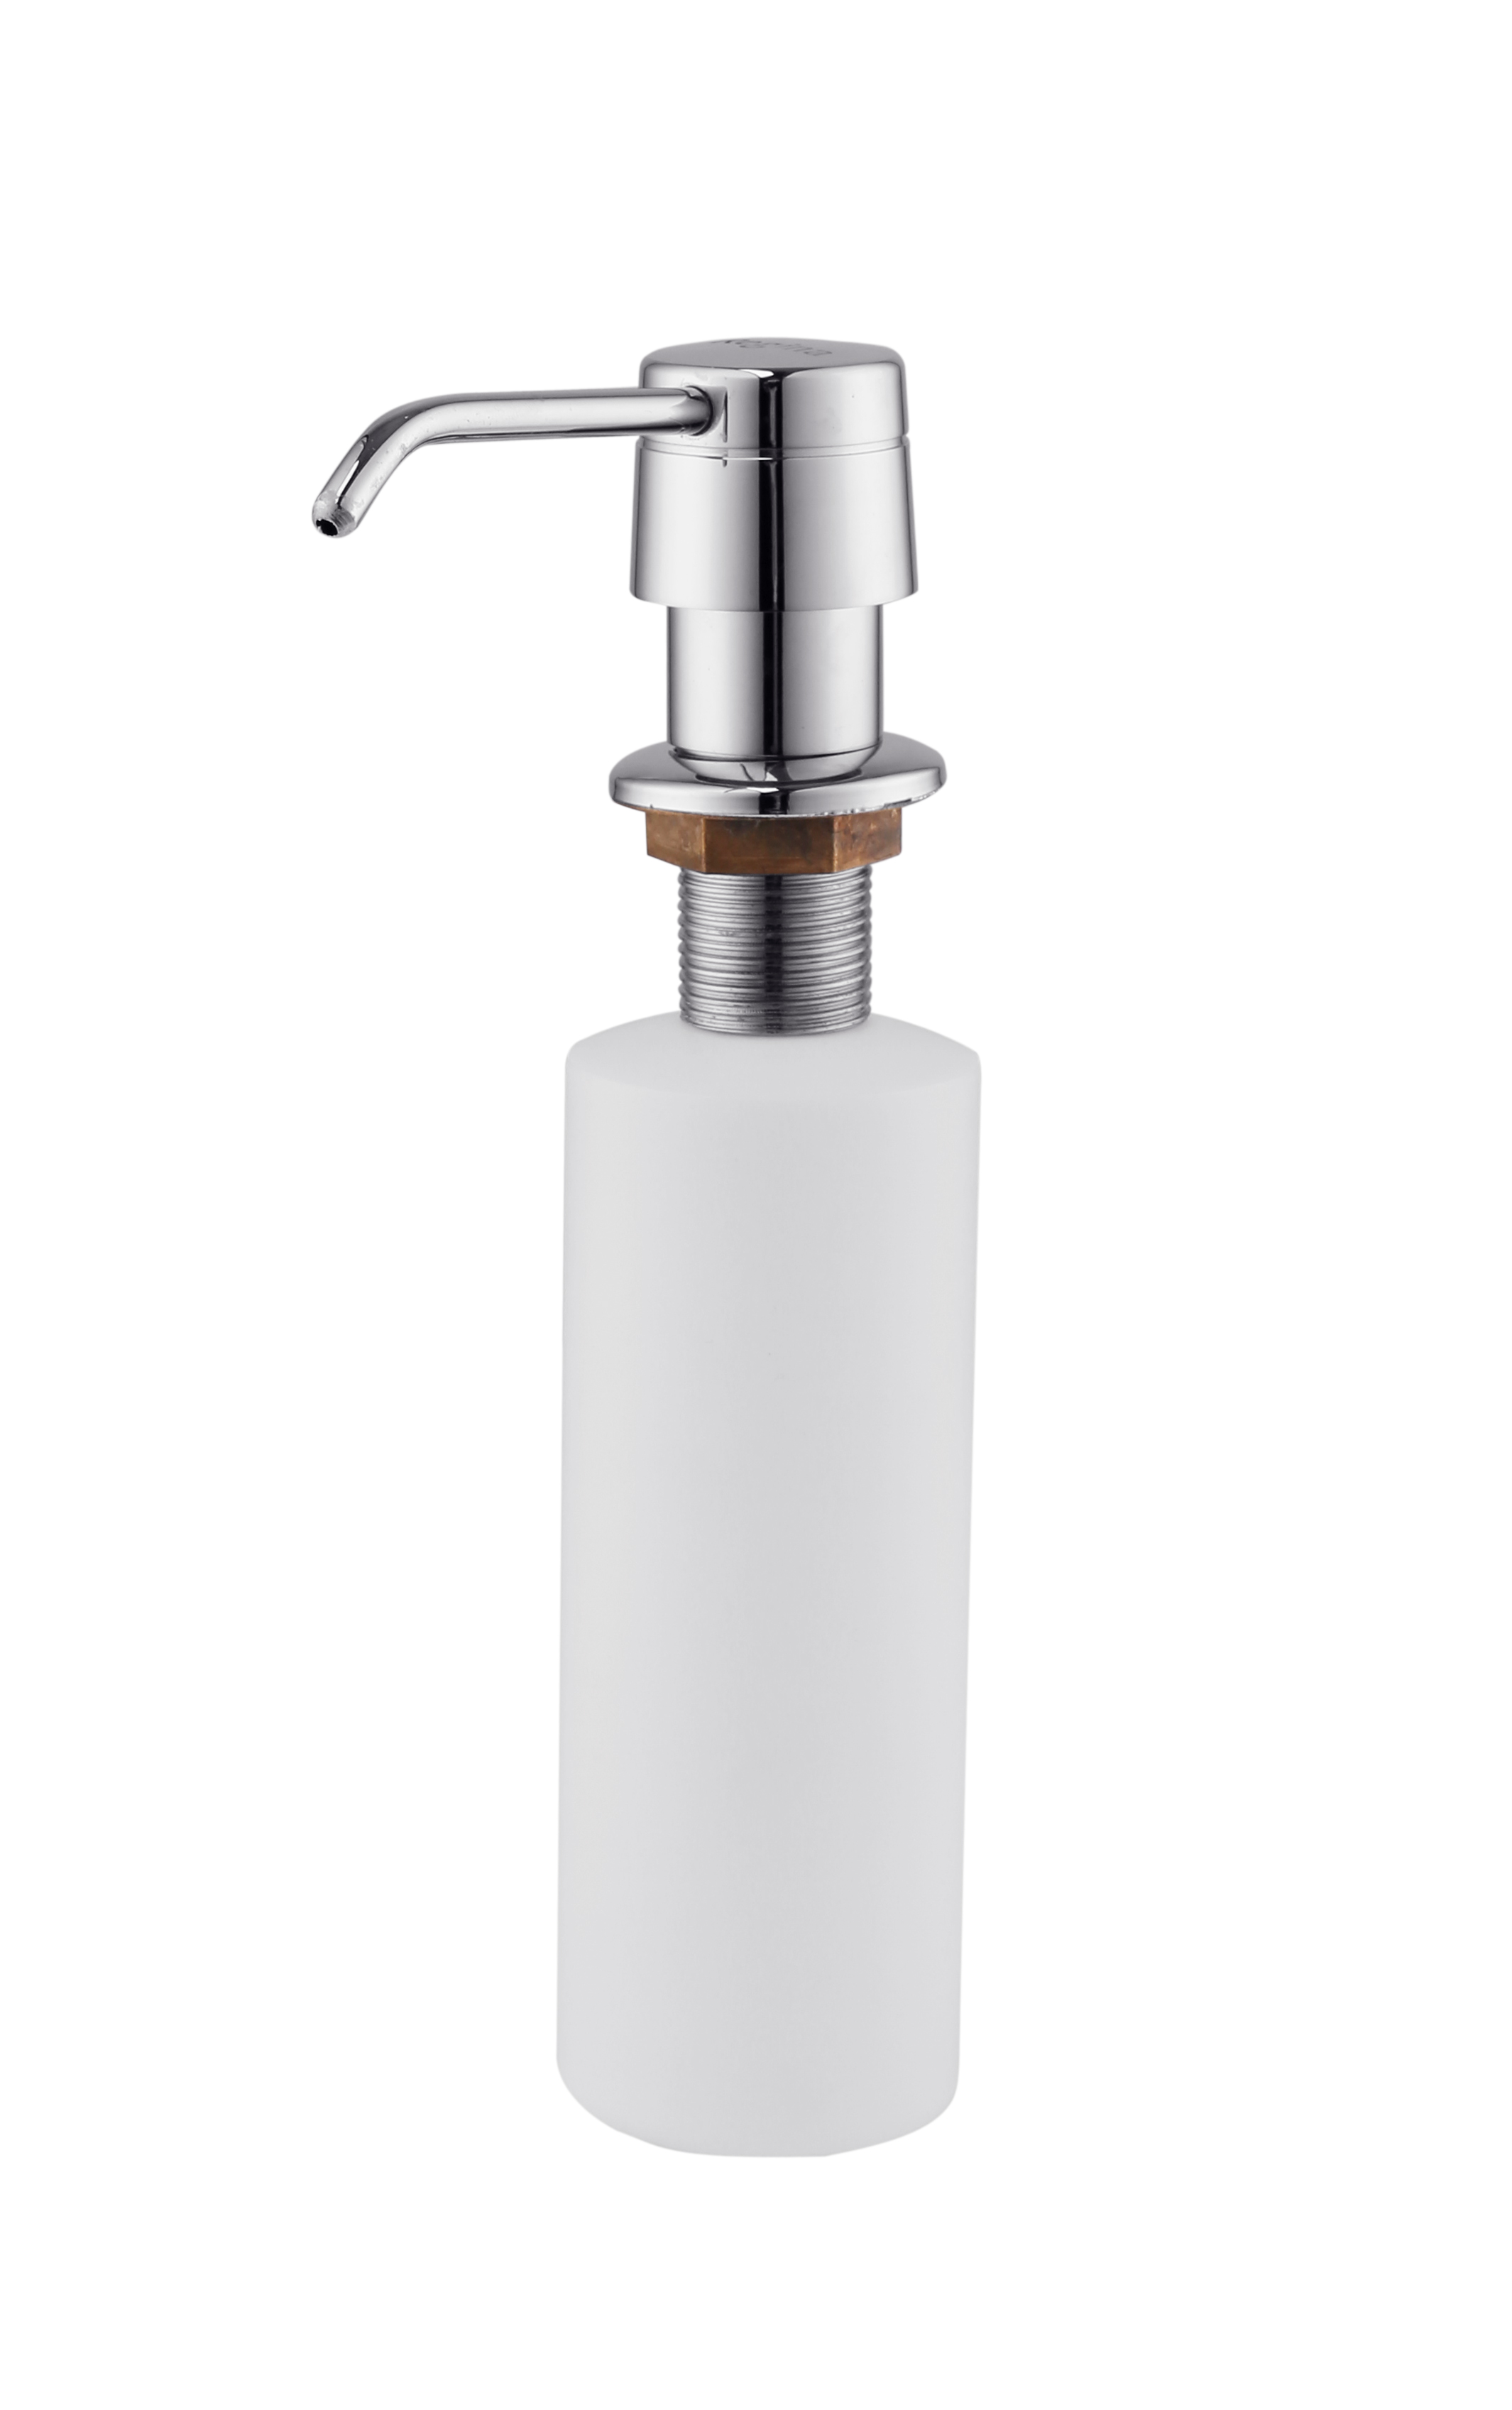 300ml Plastic Soap Dispenser For Sink